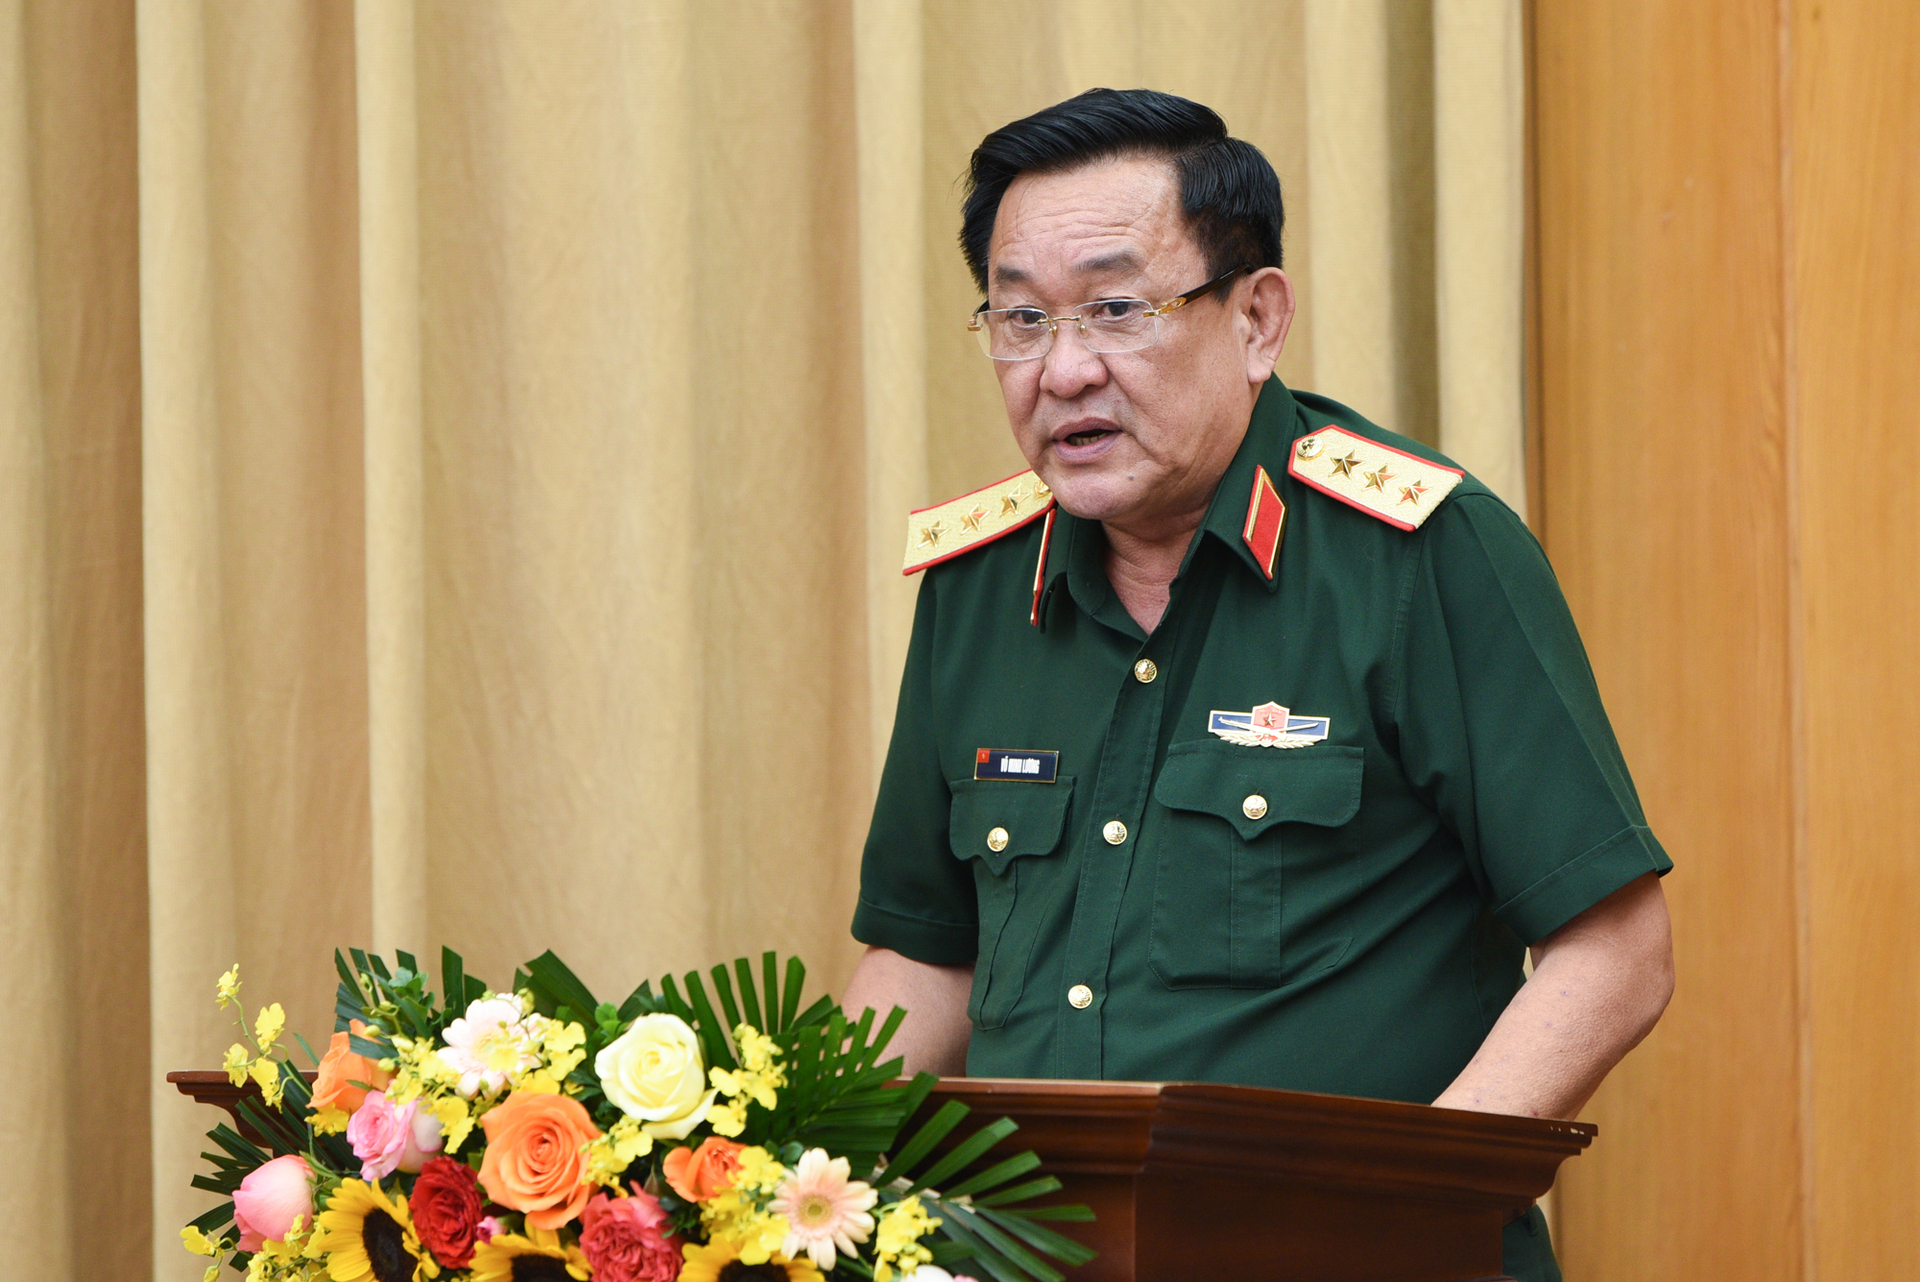 Theo Thượng tướng Võ Minh Lương, Thứ trưởng Bộ Quốc phòng, hàng năm 2 Bộ sẽ tổ chức đánh giá kết quả và đưa ra kế hoạch cho các năm tiếp theo. Ảnh: Tùng Đinh.